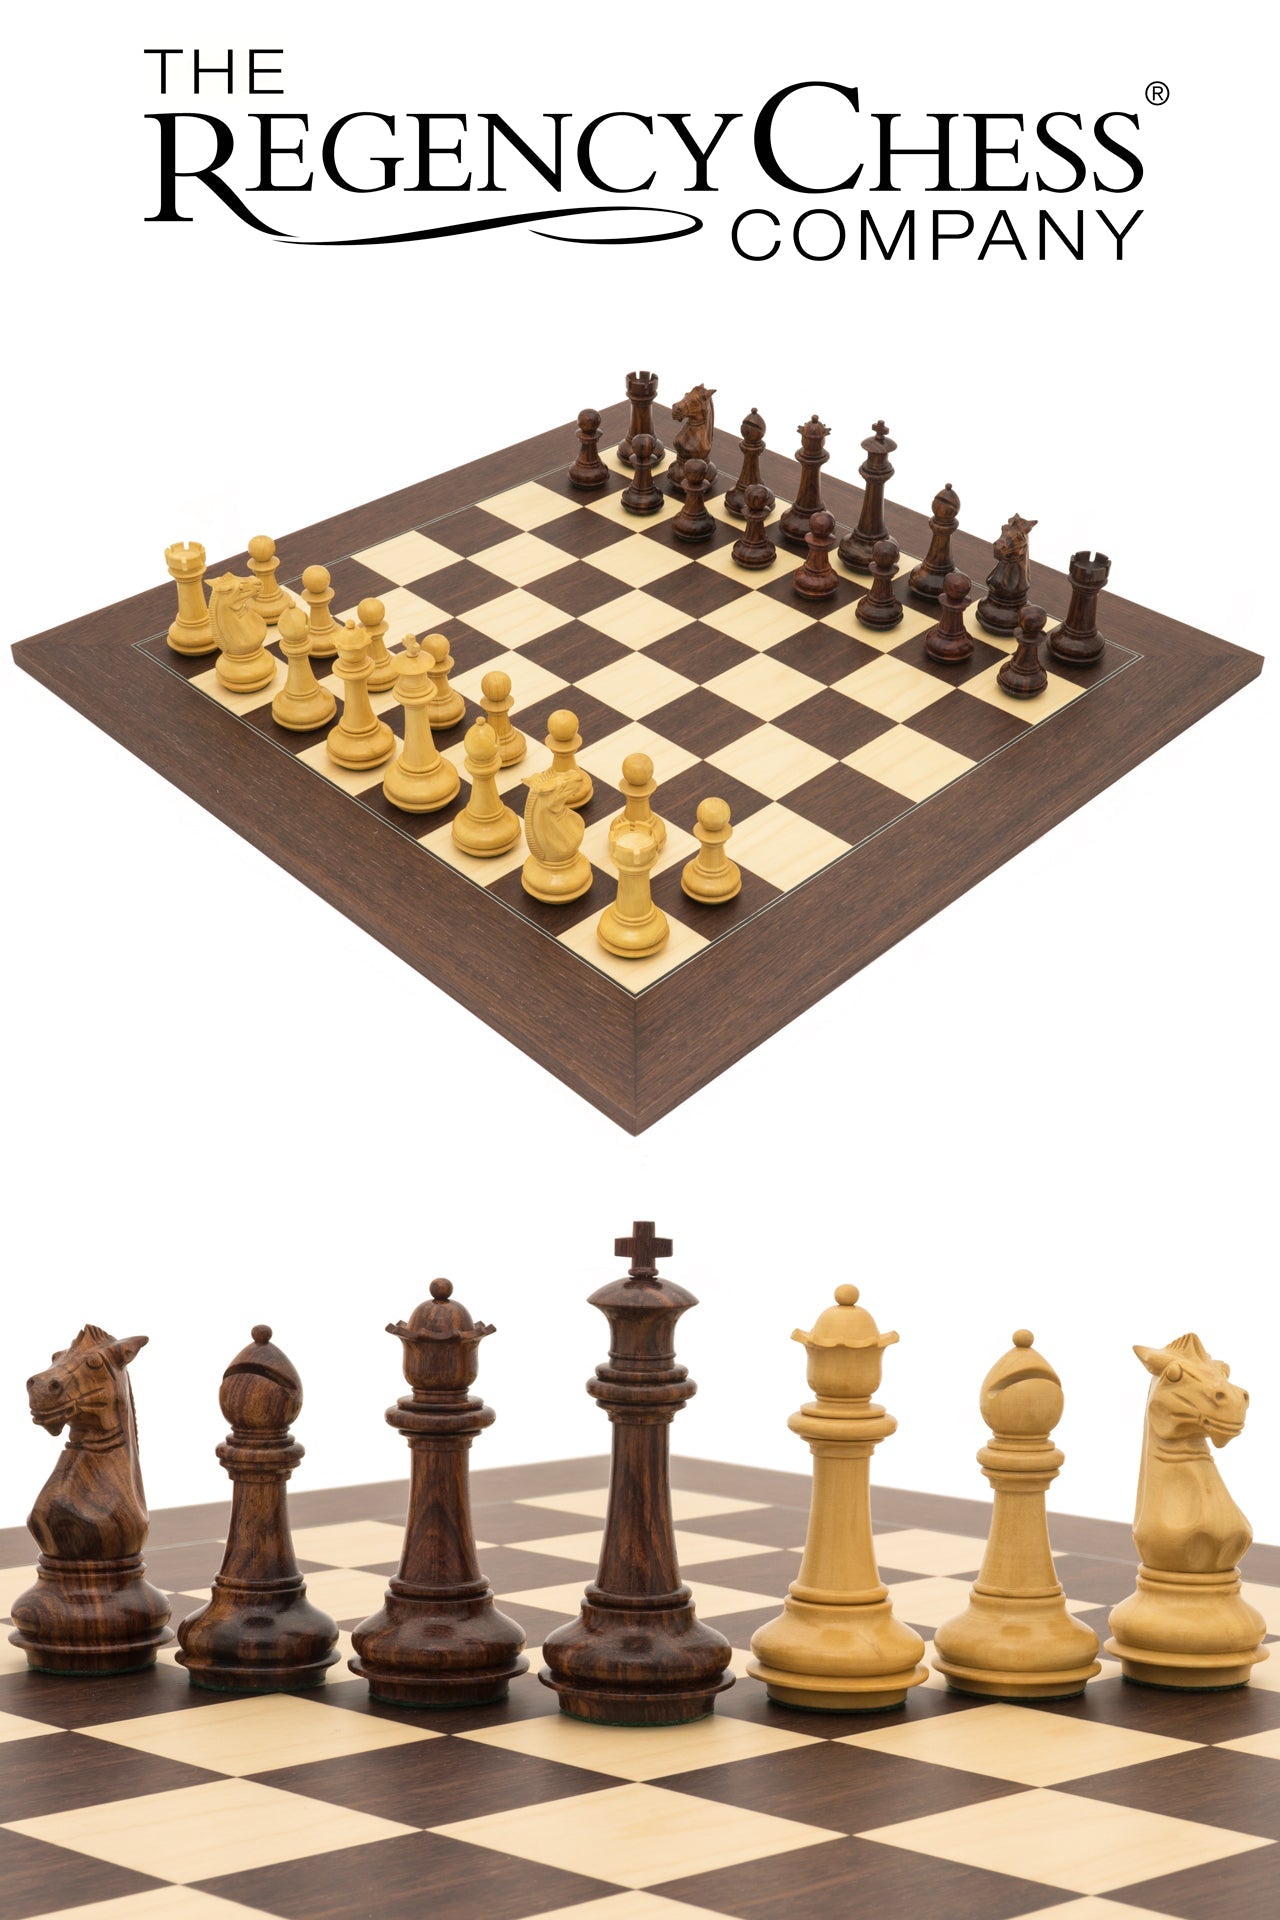 Das Templer-Palisander-Luxus-Schach-Set